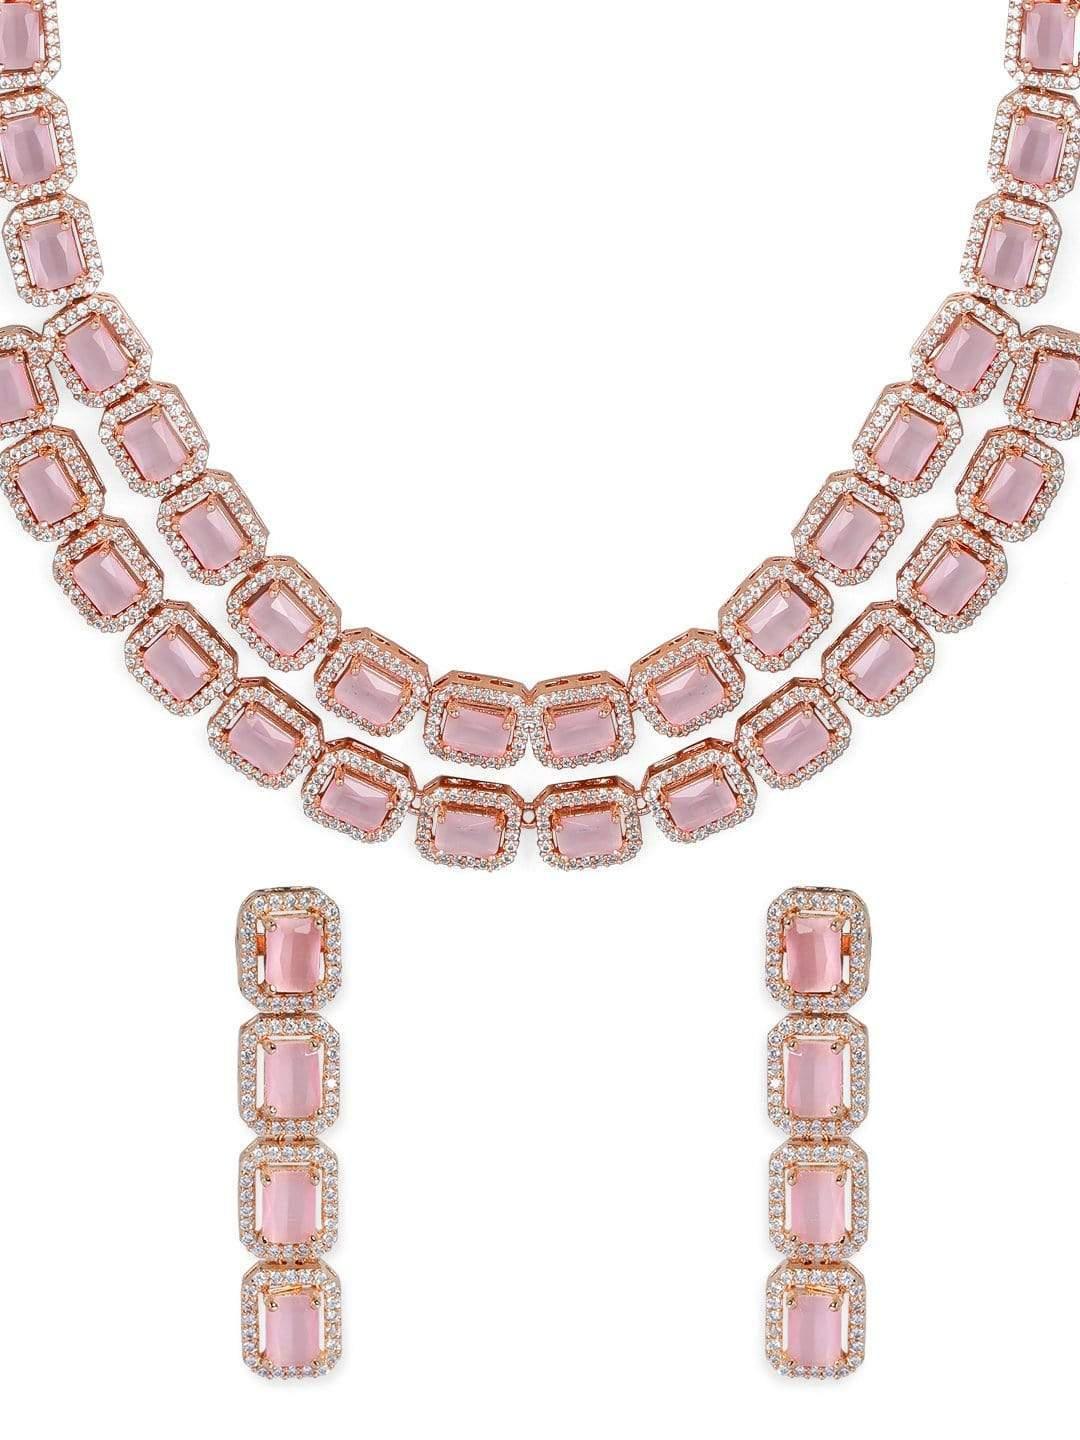 Rose Gold Pink Gemstone Studded Elegant Necklace Set - Indiakreations